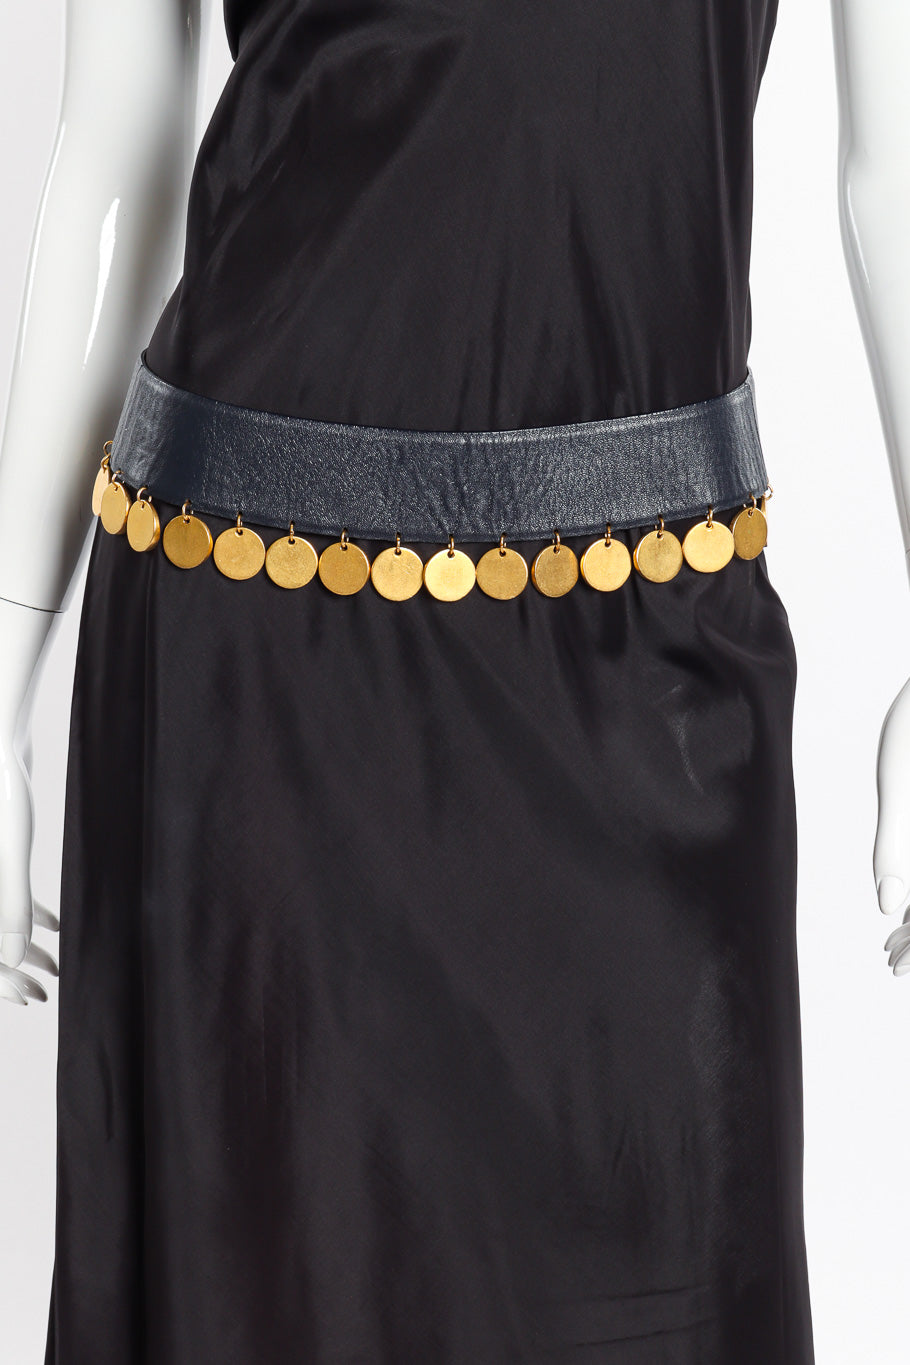 Vintage Donna Karan Coin Fringe Leather Belt on mannequin @recessla